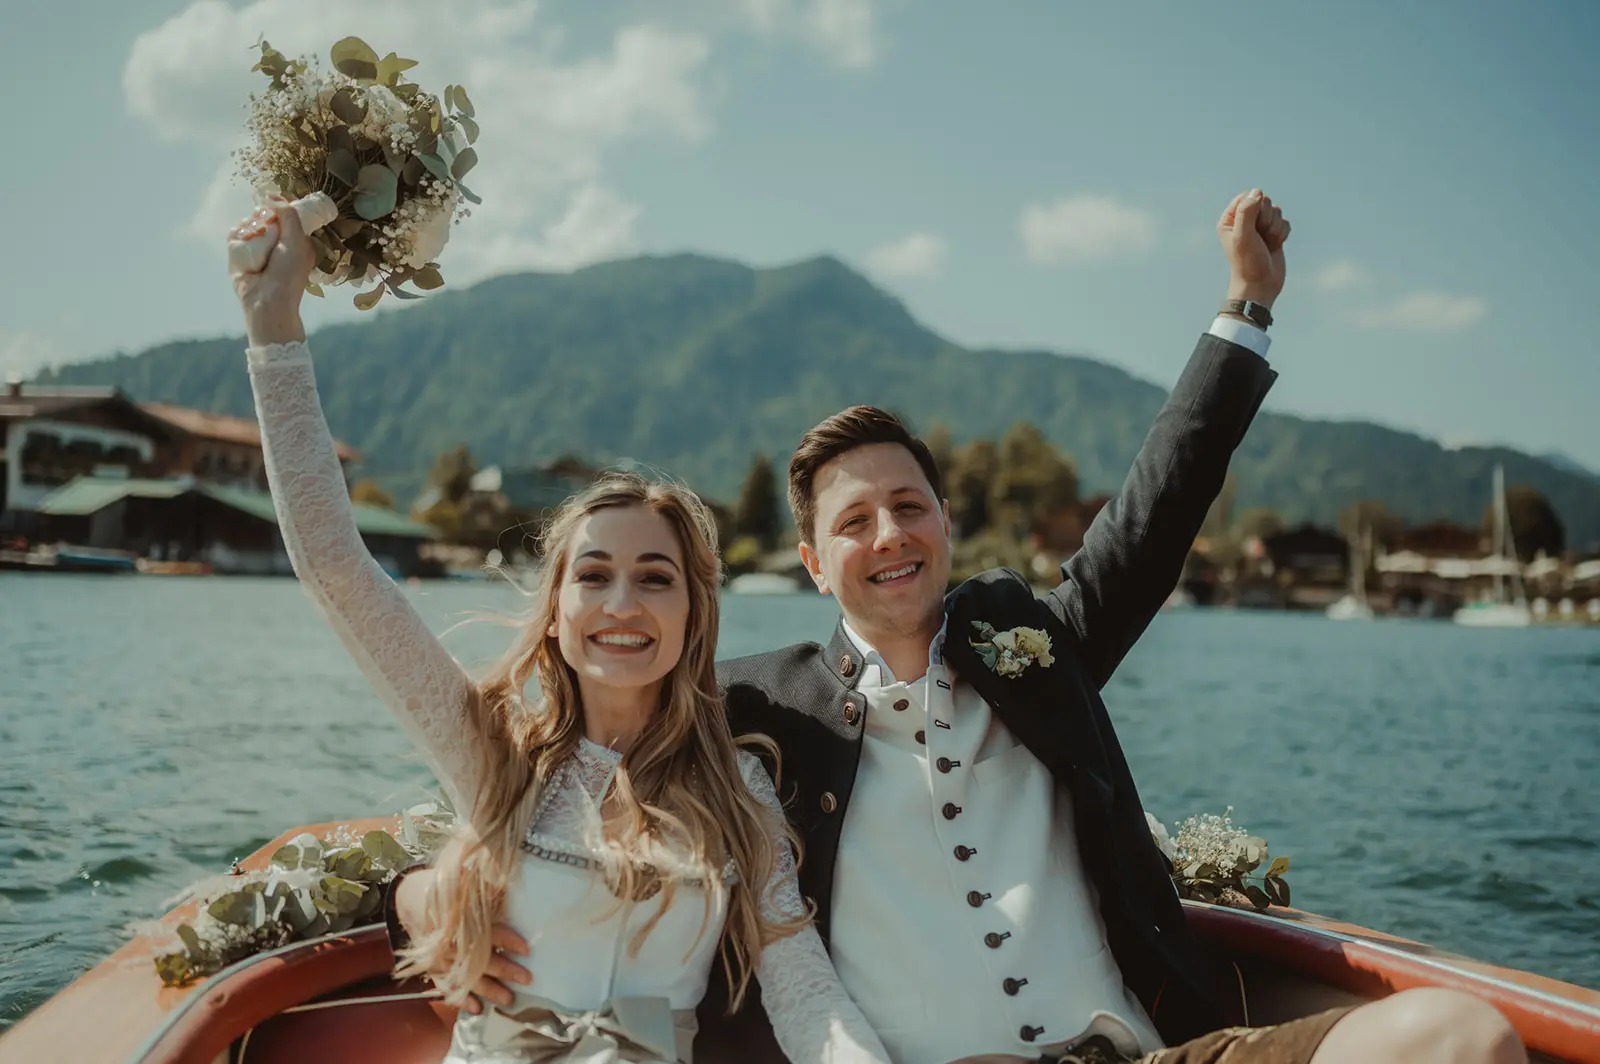 Trachtenhochzeit
Braut und Bräutigam
heiraten am See